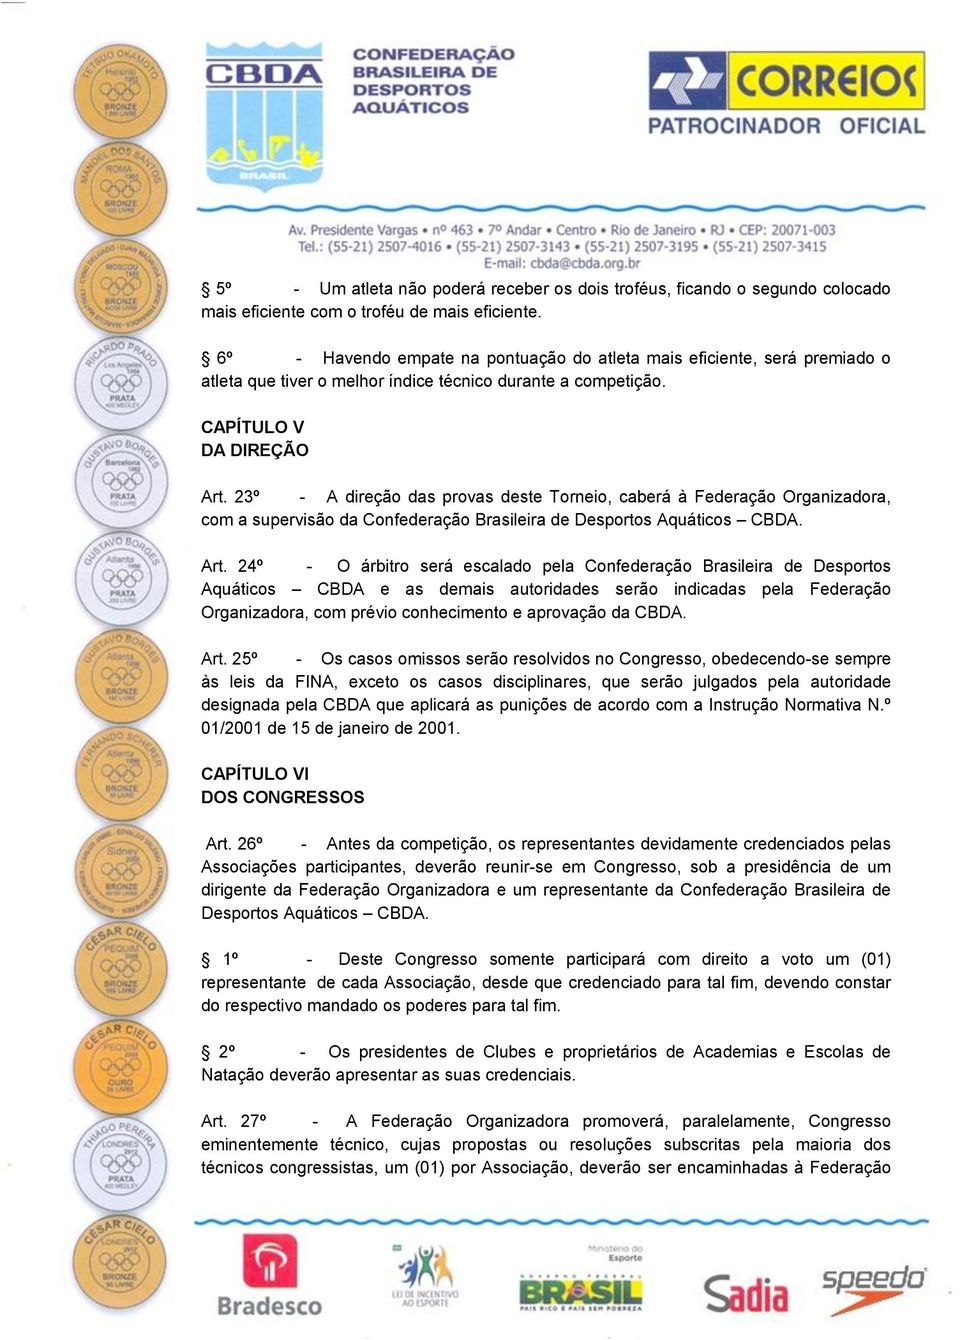 23º - A direção das provas deste Torneio, caberá à Federação Organizadora, com a supervisão da Confederação Brasileira de Desportos Aquáticos CBDA. Art.